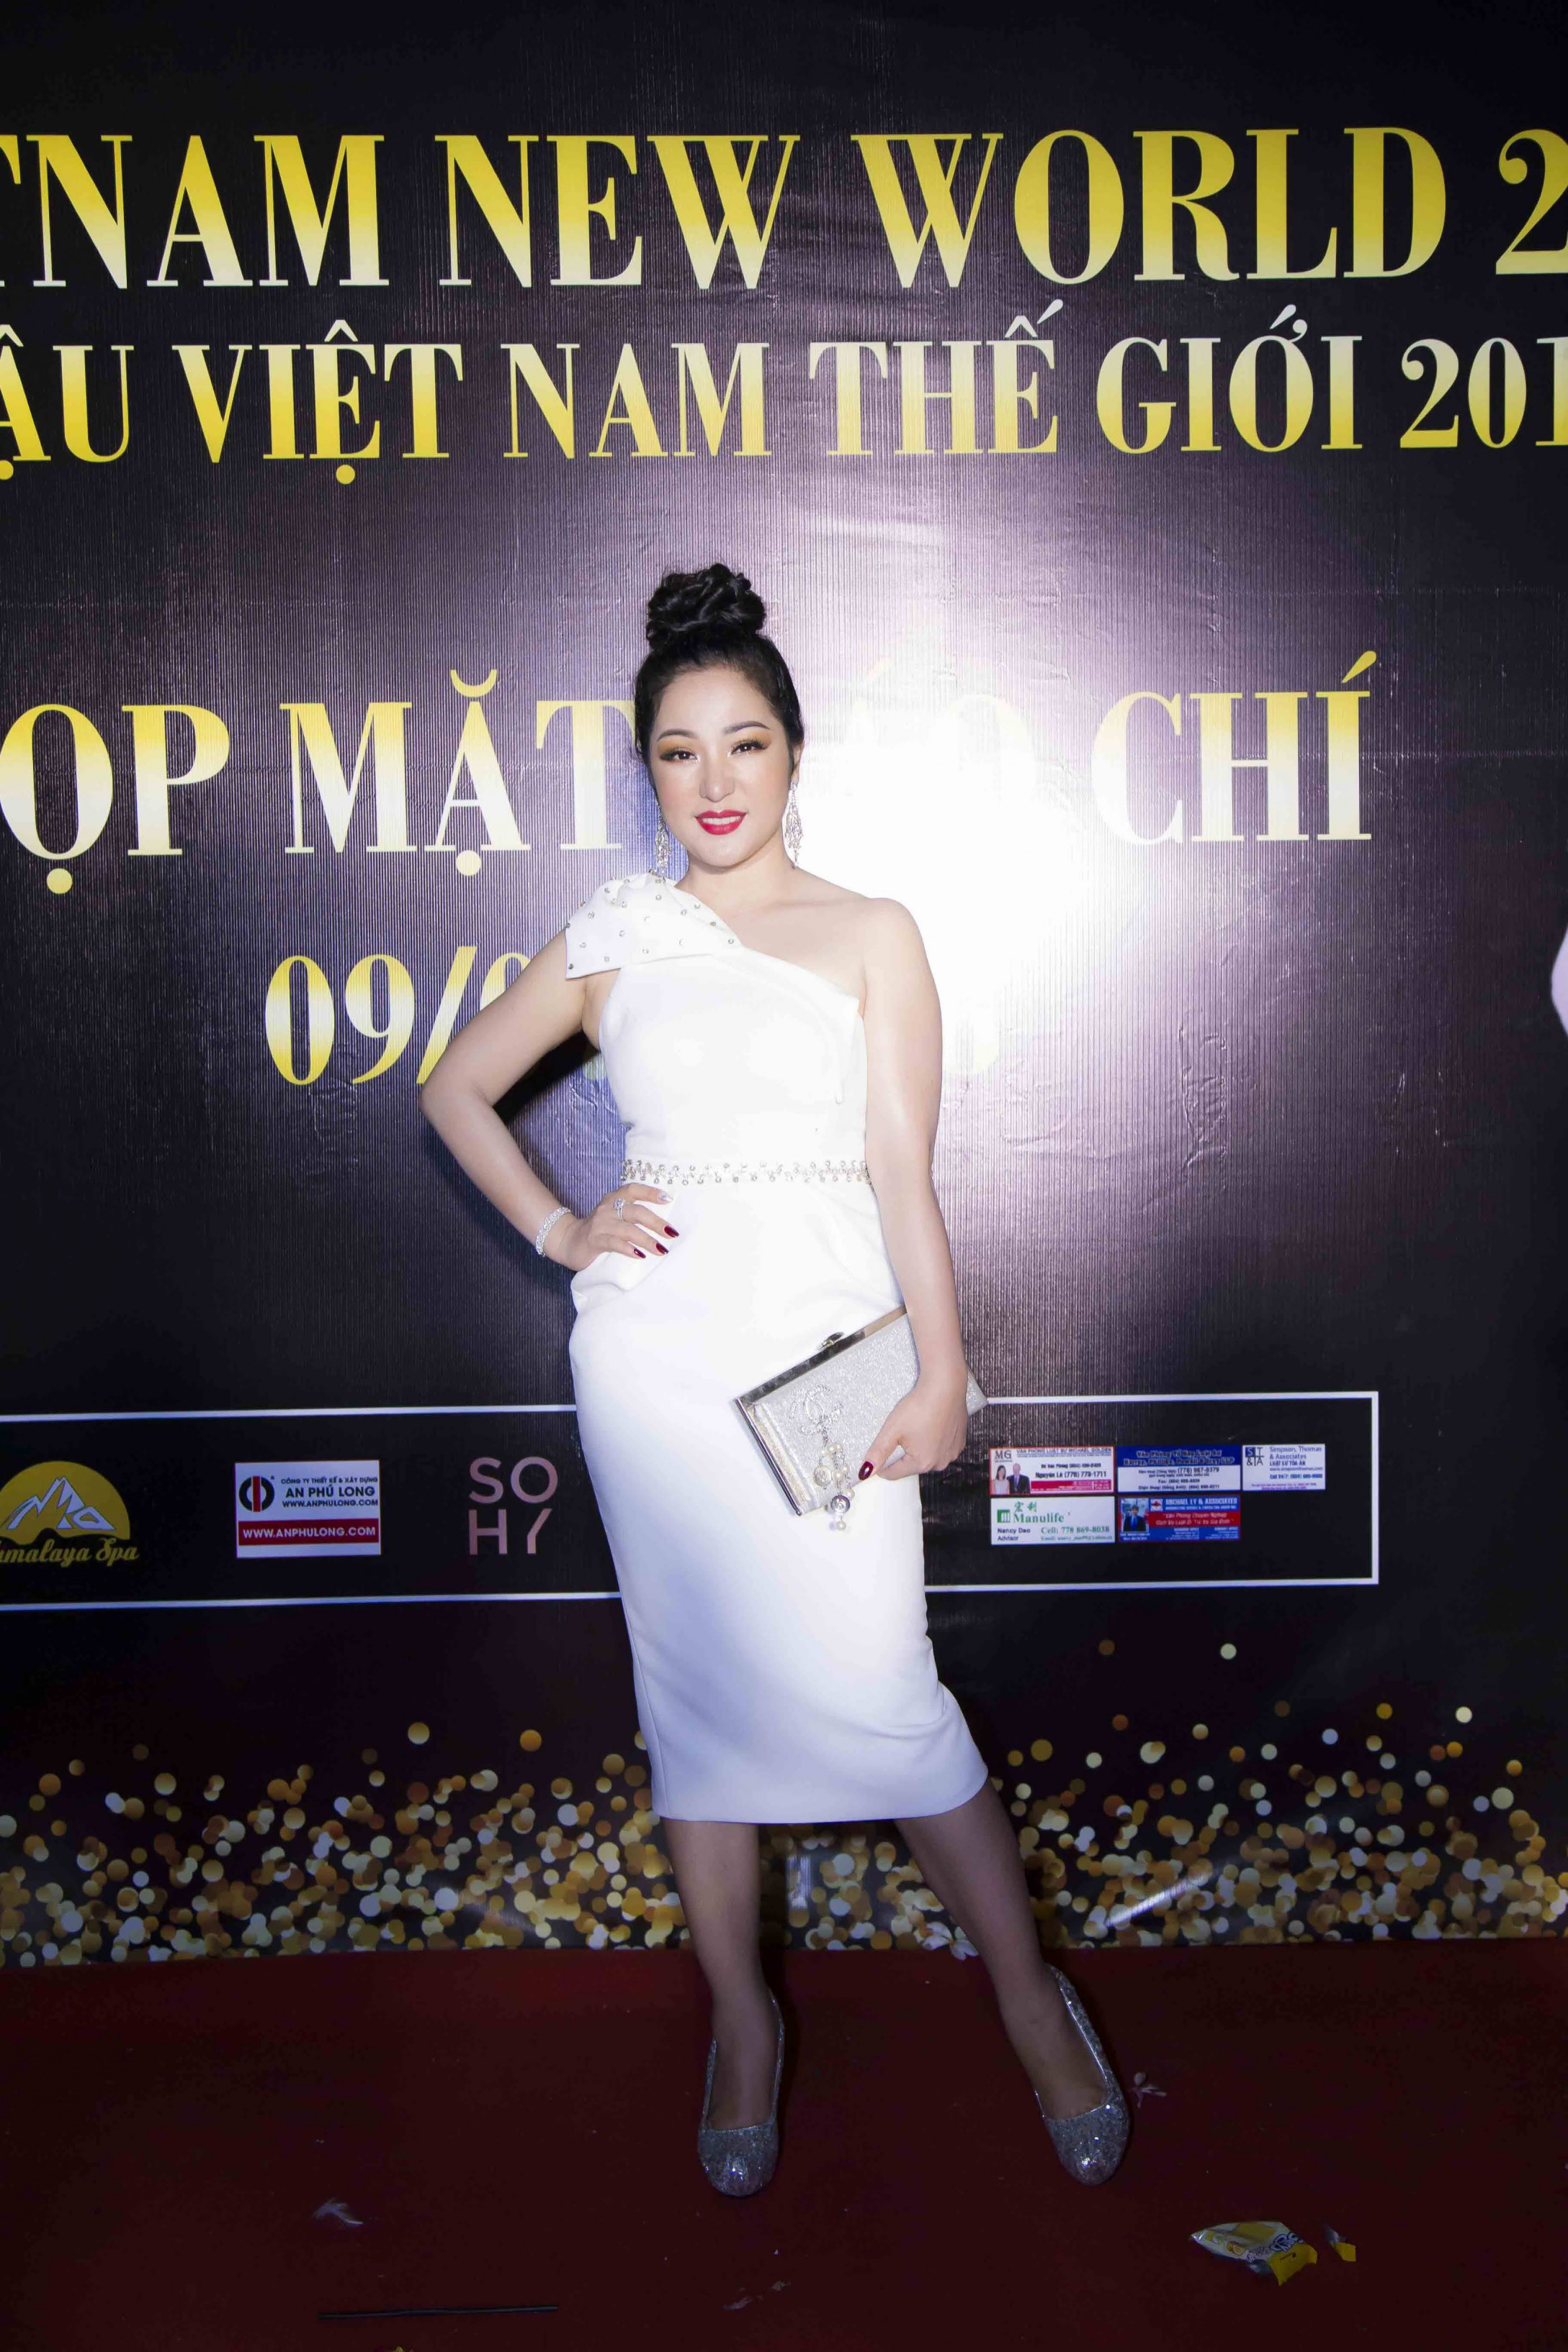 BTC cuộc thi Ms Vietnam New World 2018 vừa tổ chức buổi công bố cuộc thi, giới thiệu dàn giám khảo, khách mời với sự hiện diện của nhiều tên tuổi trong giới giải trí. Danh hài Thúy Nga diện chiếc đầm lệch vai trắng gợi cảm đem đến tiếng cười cho khách mời trong suốt sự kiện.